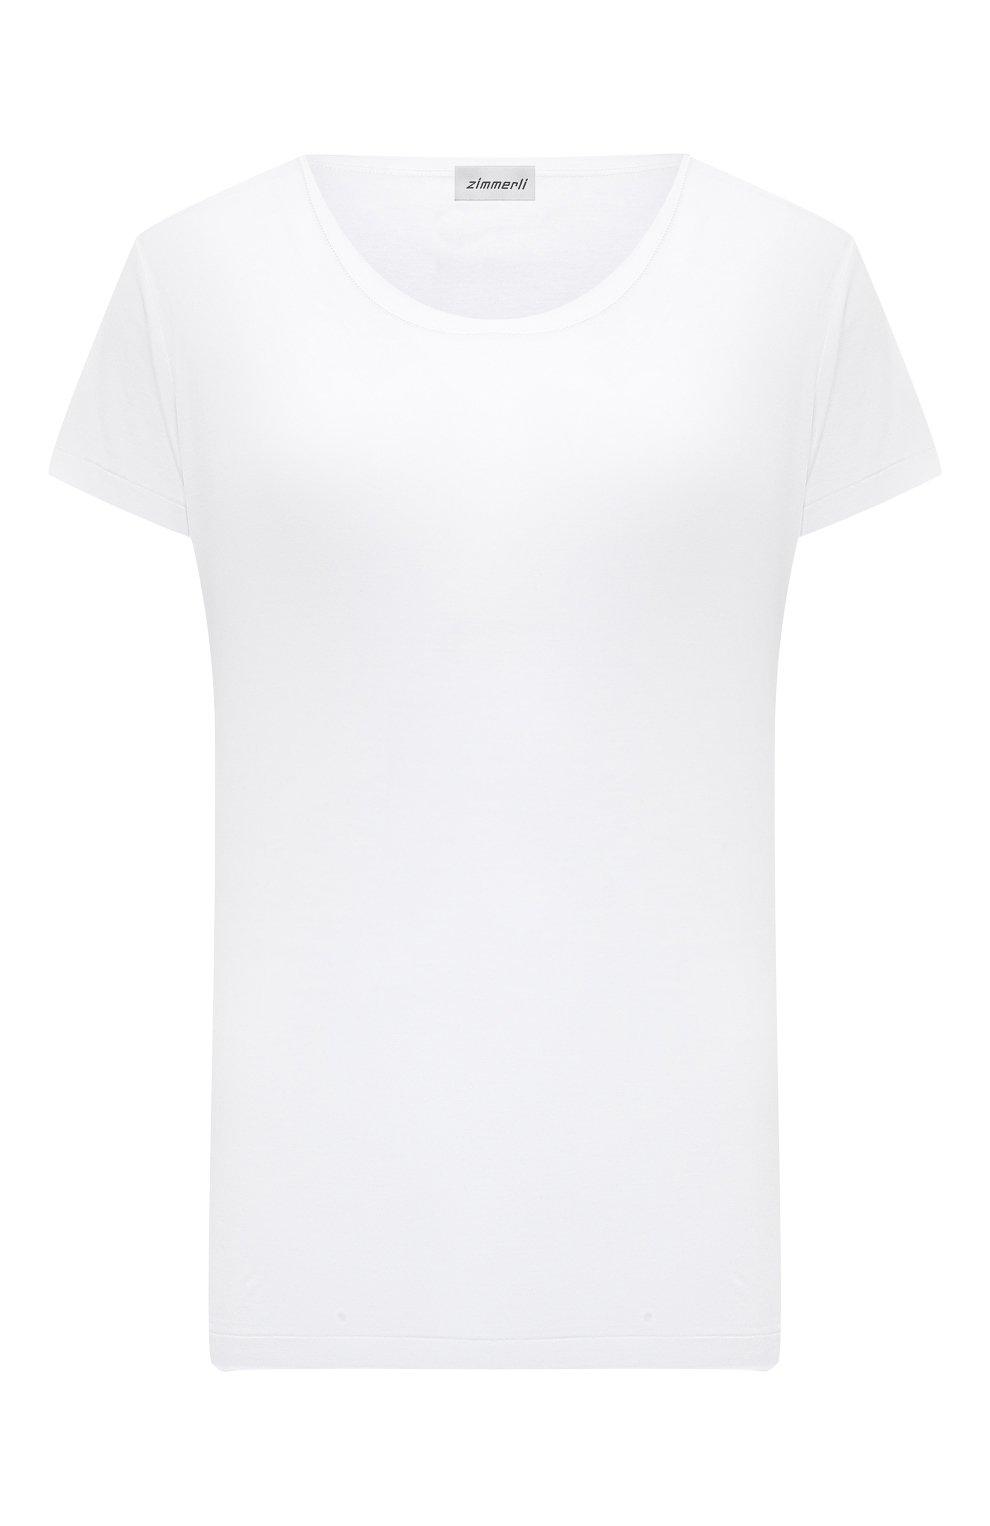 Фото Женская белая хлопковая футболка ZIMMERLI, арт. 286-2761 Швейцария 286-2761 